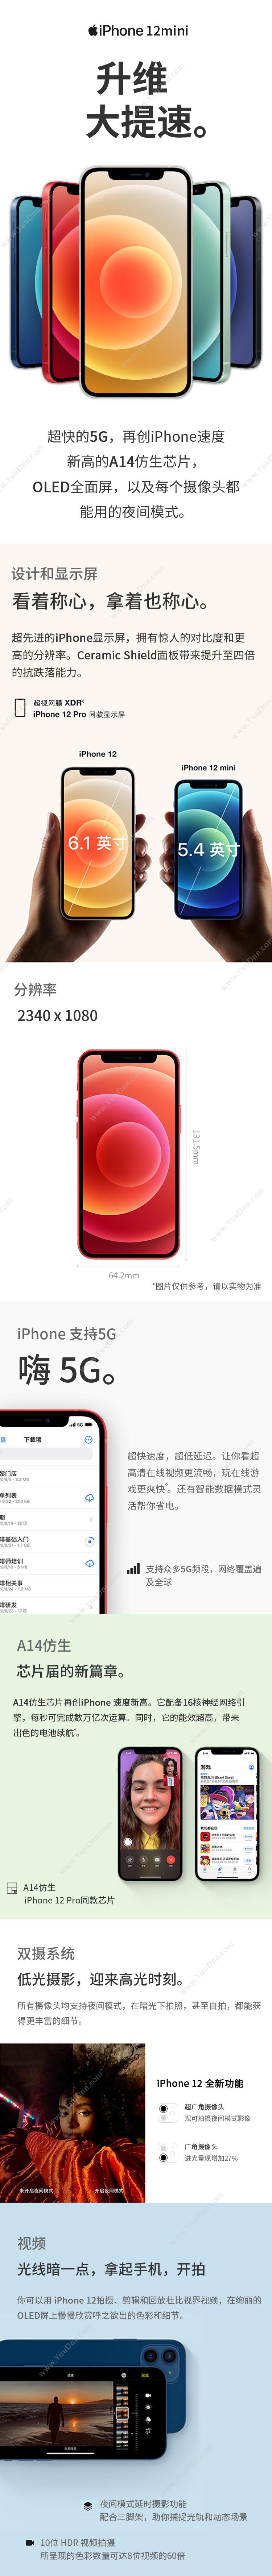 苹果 Apple iPhone 12Mini (MG853CH/A) 128G 白色 移动联通电信5G手机 手机